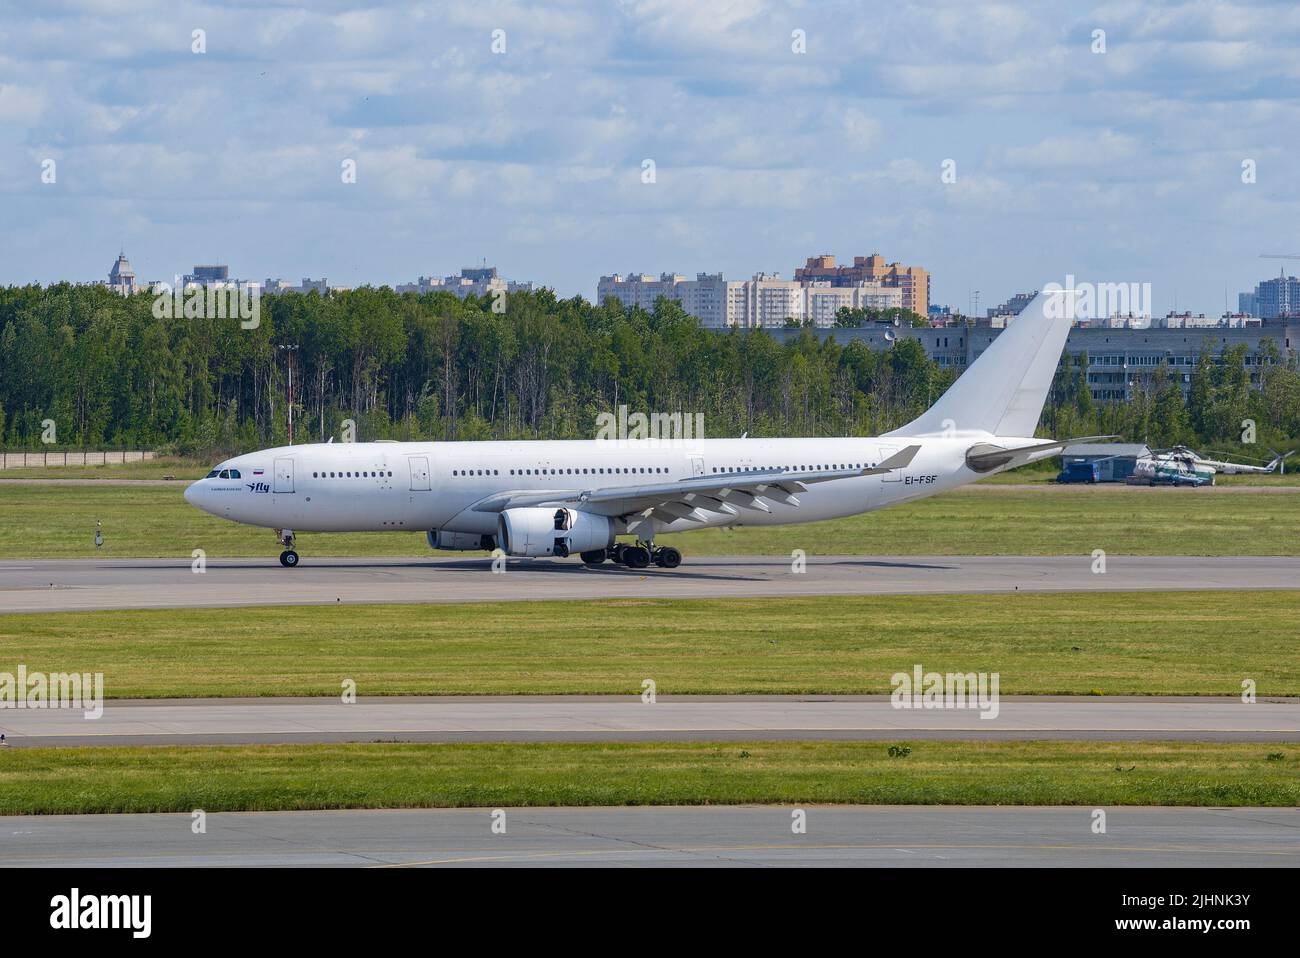 SAN PETERSBURGO, RUSIA - 20 DE JUNIO de 2018: Airbus A330-243 (EI-FSF) de la aerolínea i-Fly en el aeropuerto de Pulkovo Foto de stock